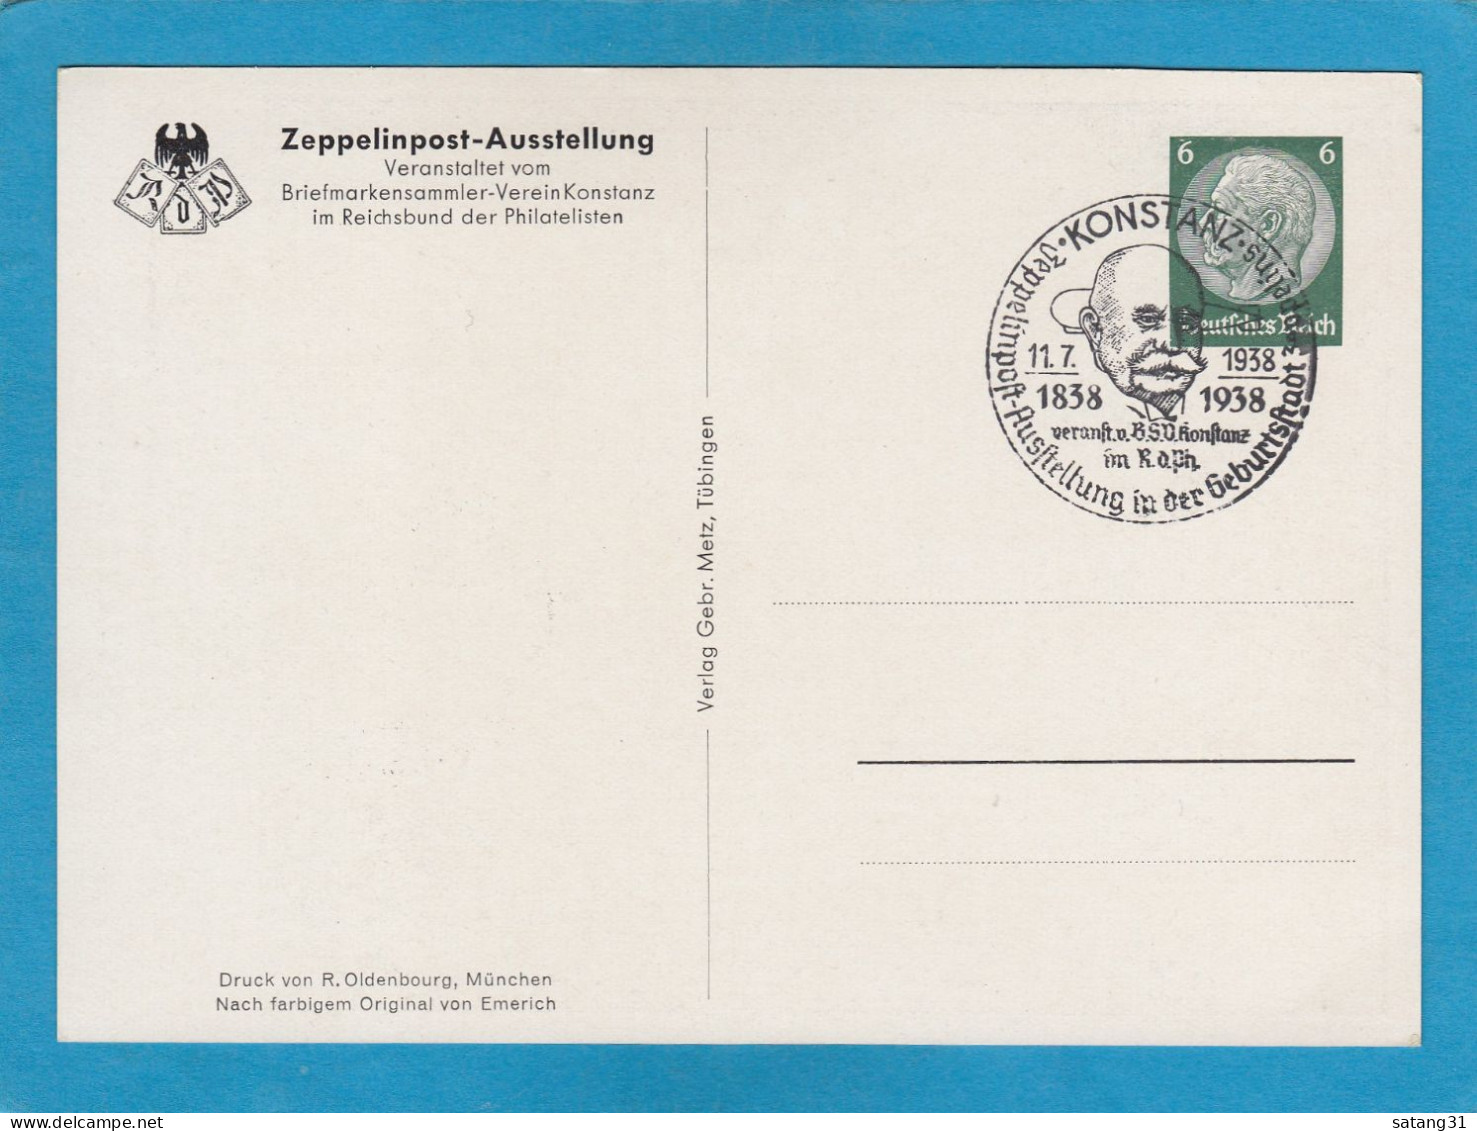 ZEPPELINPOST AUSSTELLUNG IN DER GEBURTSSTADT ZEPPELINS KONSTANZ, 1938. - Private Postal Stationery